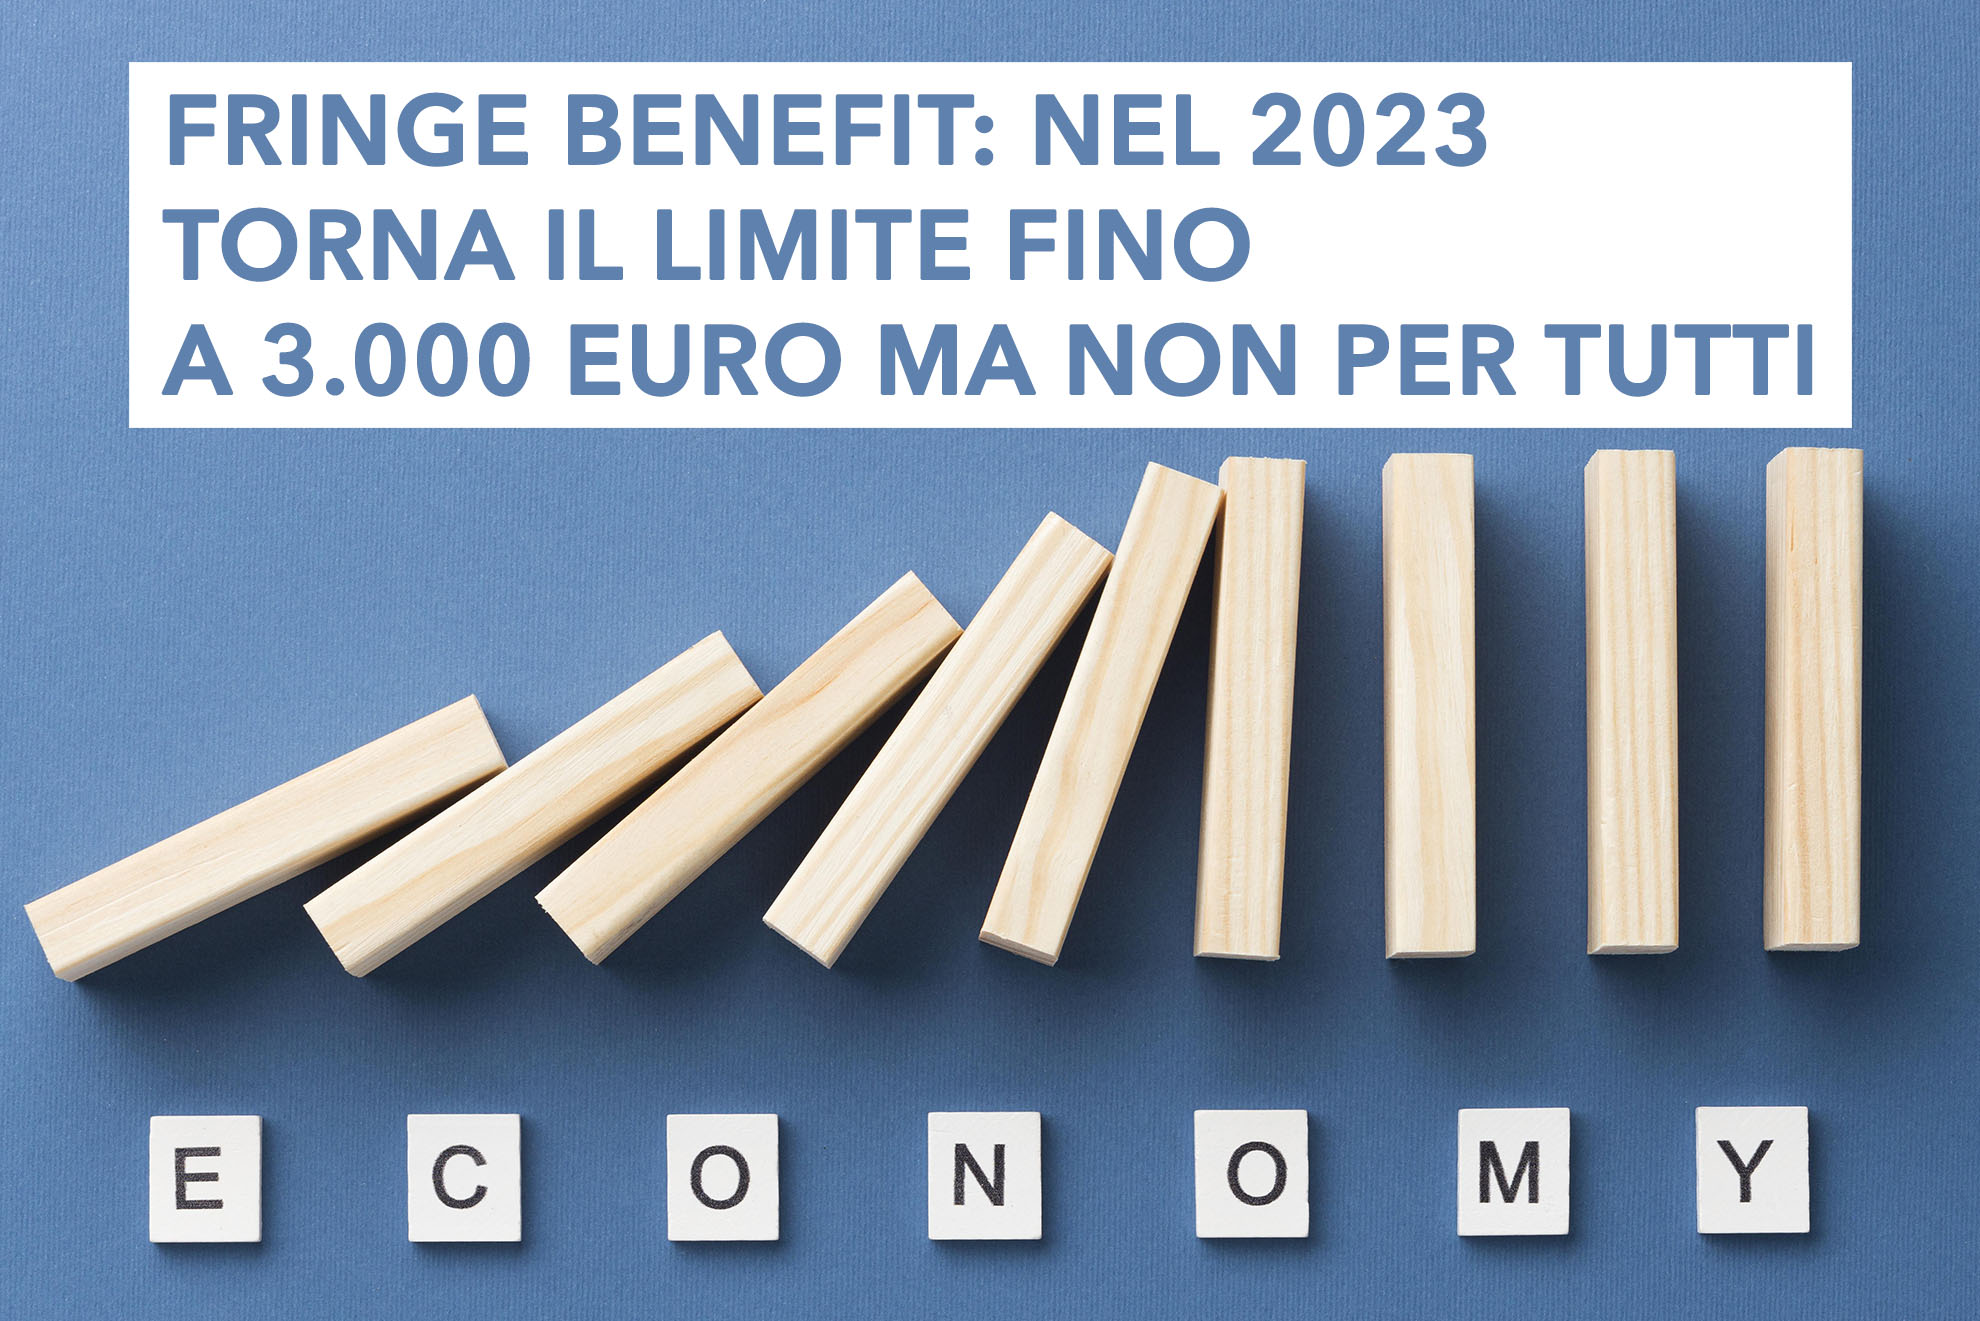 Fringe benefit: nel 2023 torna il limite fino a 3.000 euro ma non per tutti